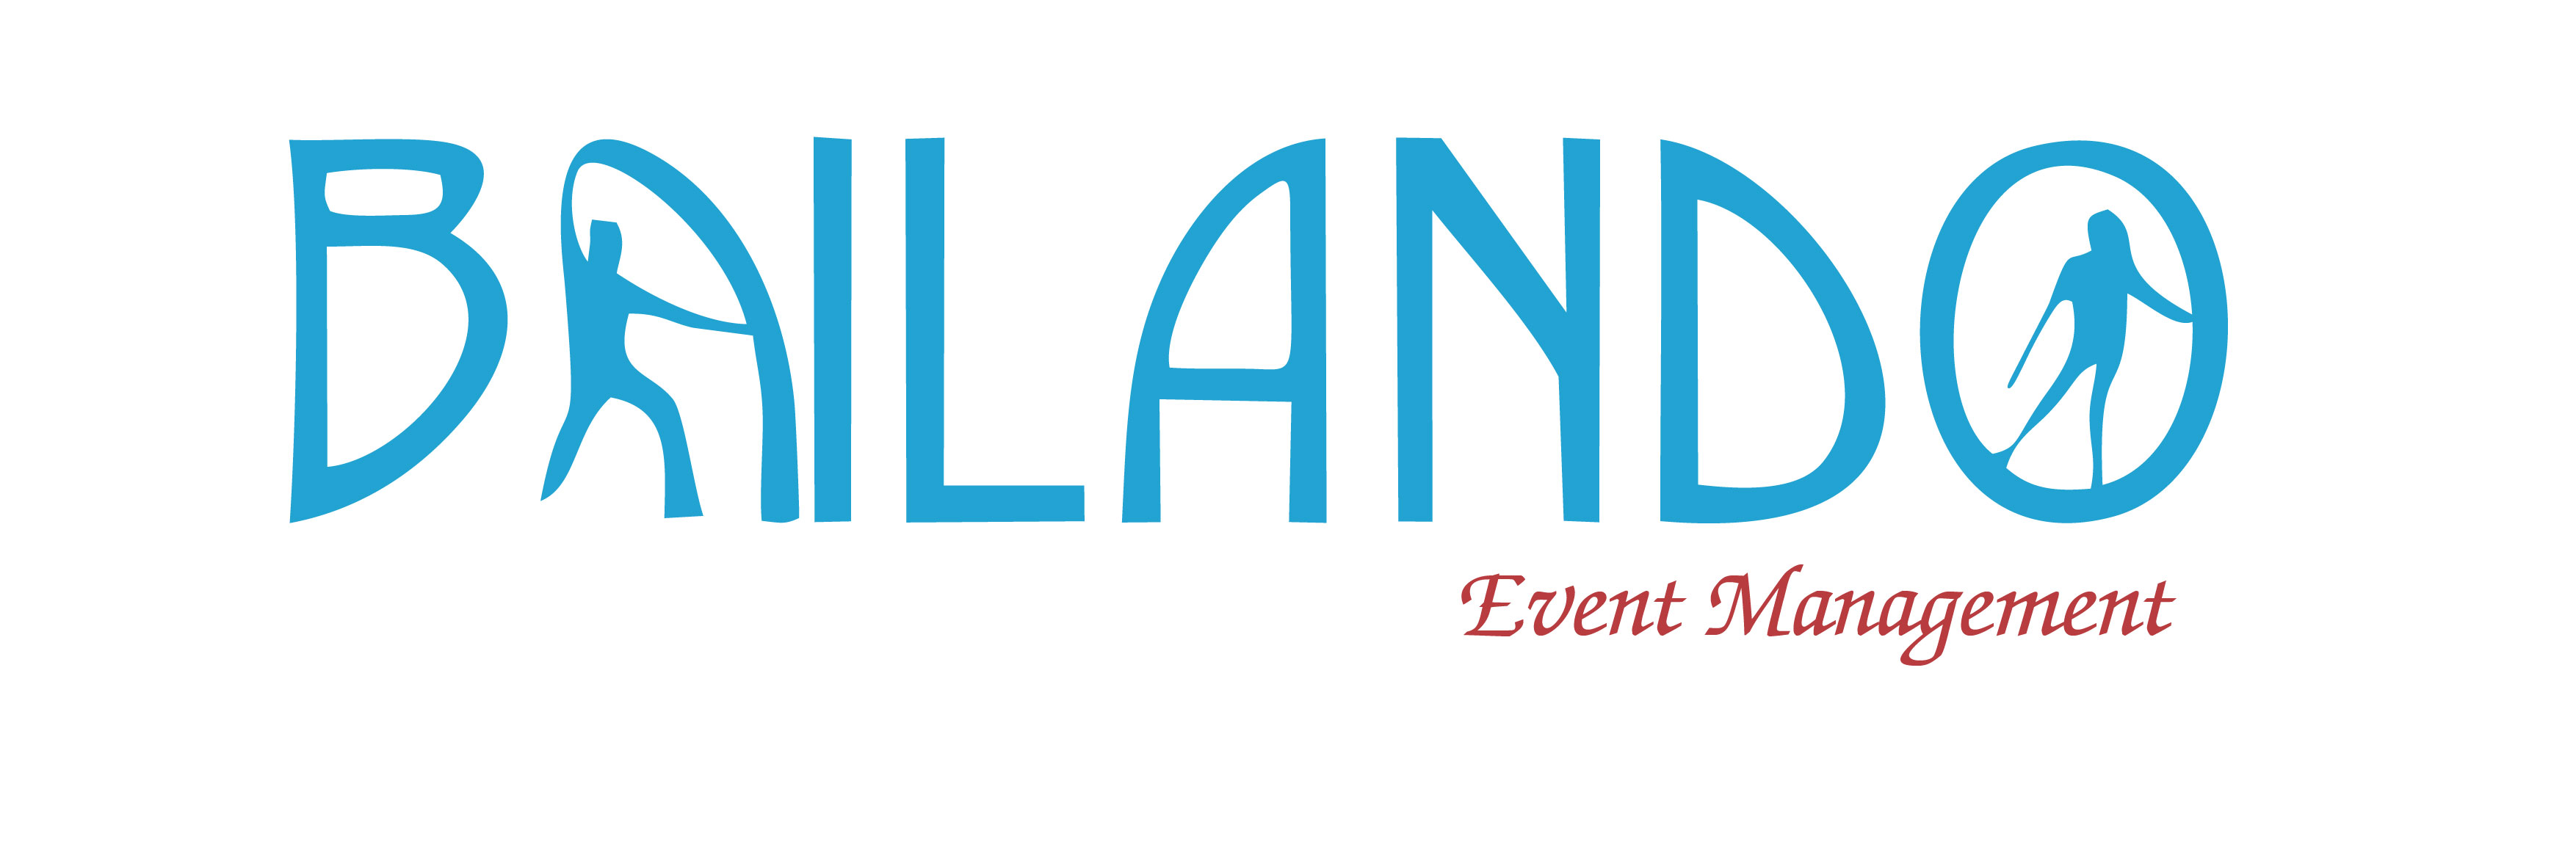 BAILANDO EVENT MANAGEMENT Logo